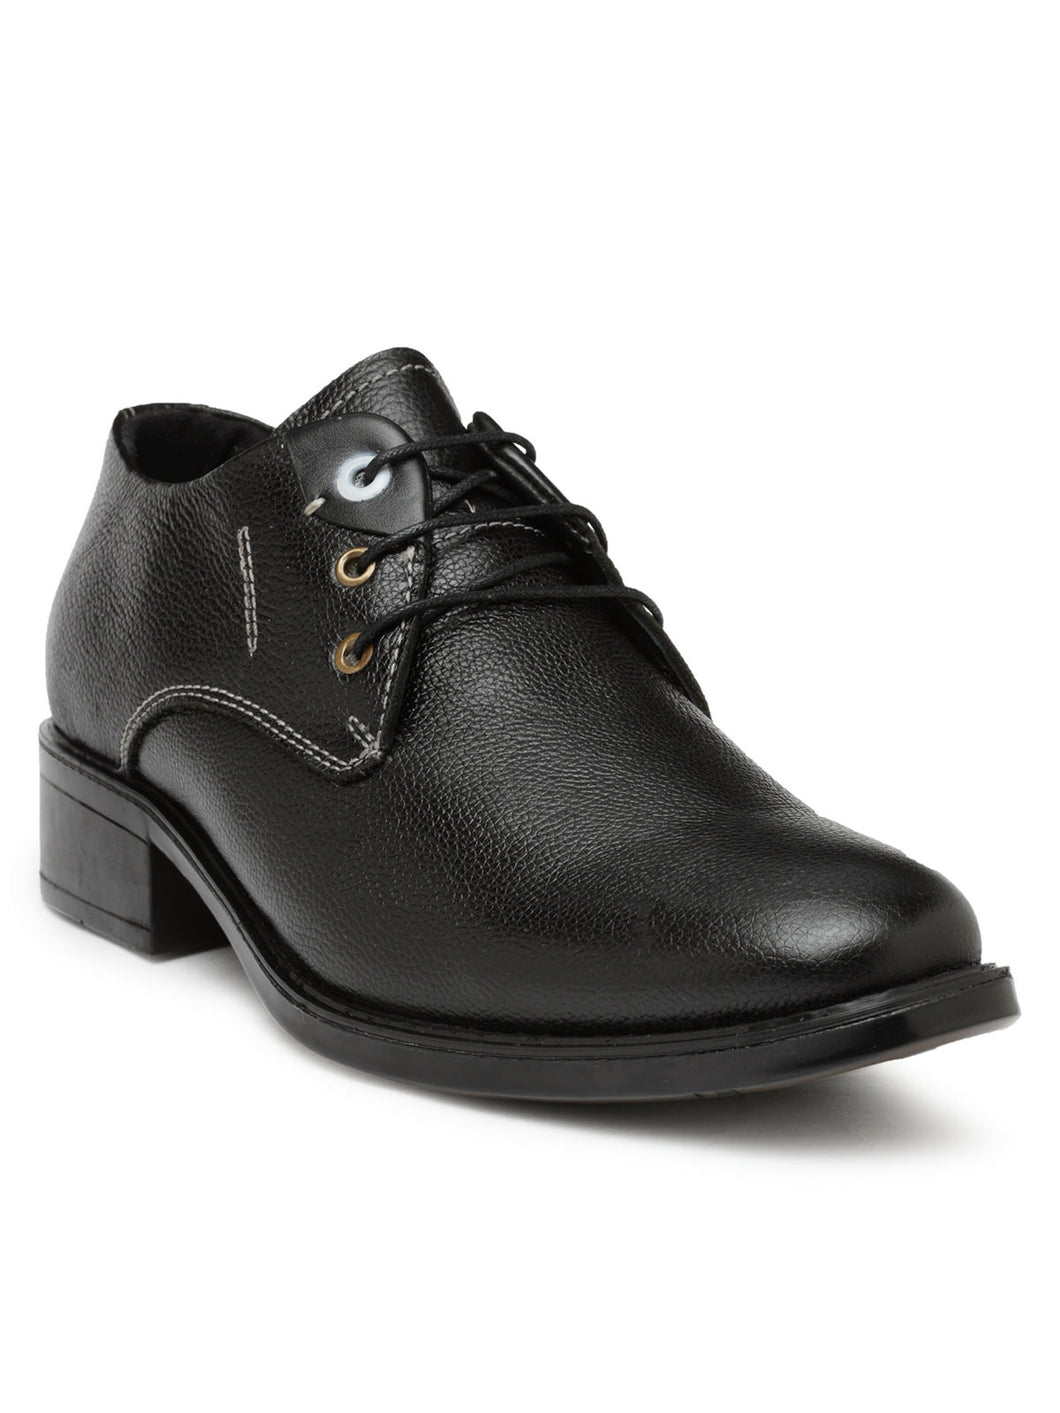 Teakwood Leather Black Formal Shoes